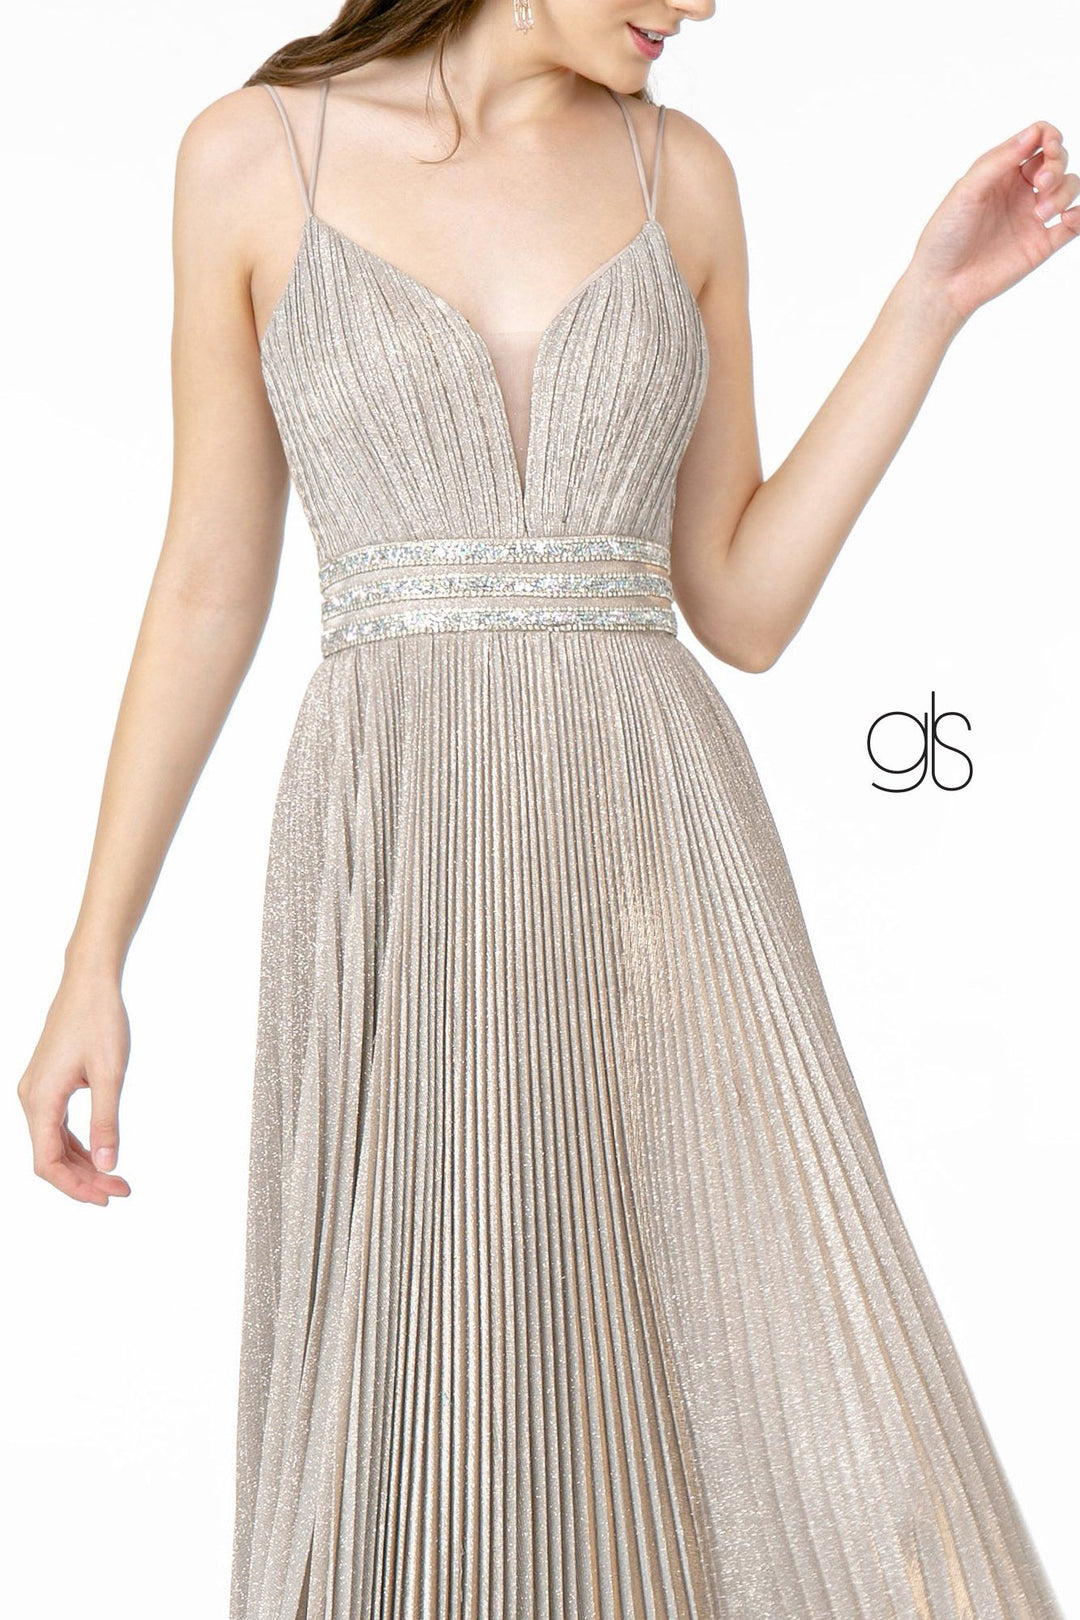 Pleated Long A-Line Metallic Glitter Dress by Elizabeth K GL2905